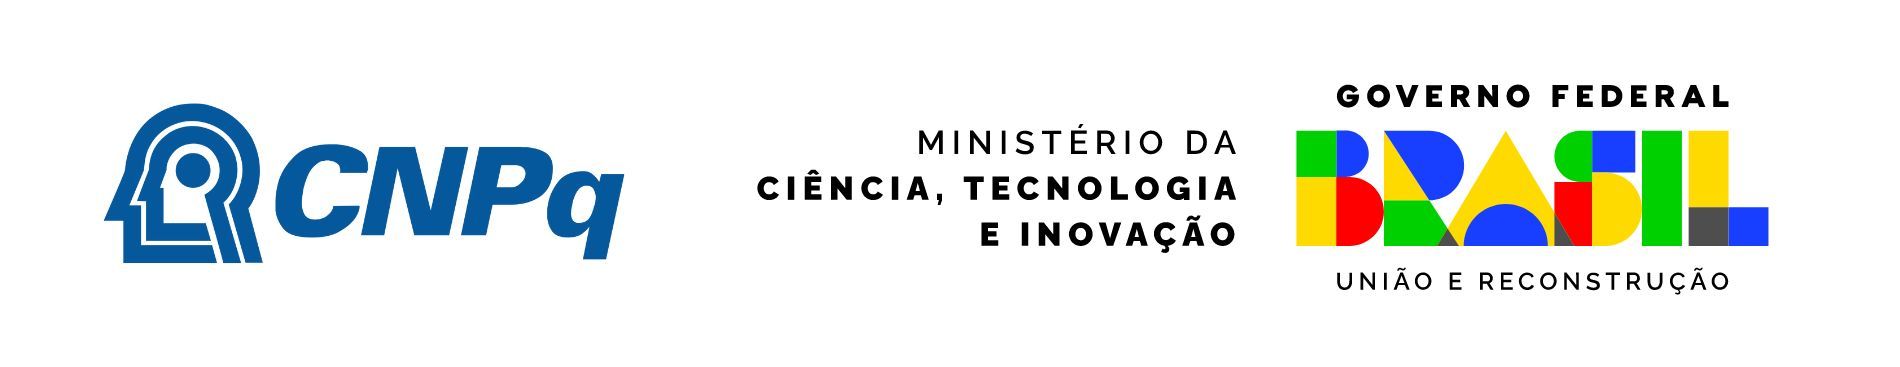 Contamos com o apoio do CNPq e Ministério da Ciência, Tecnologia e Inovação (MCTI) para desenvolver este projeto.